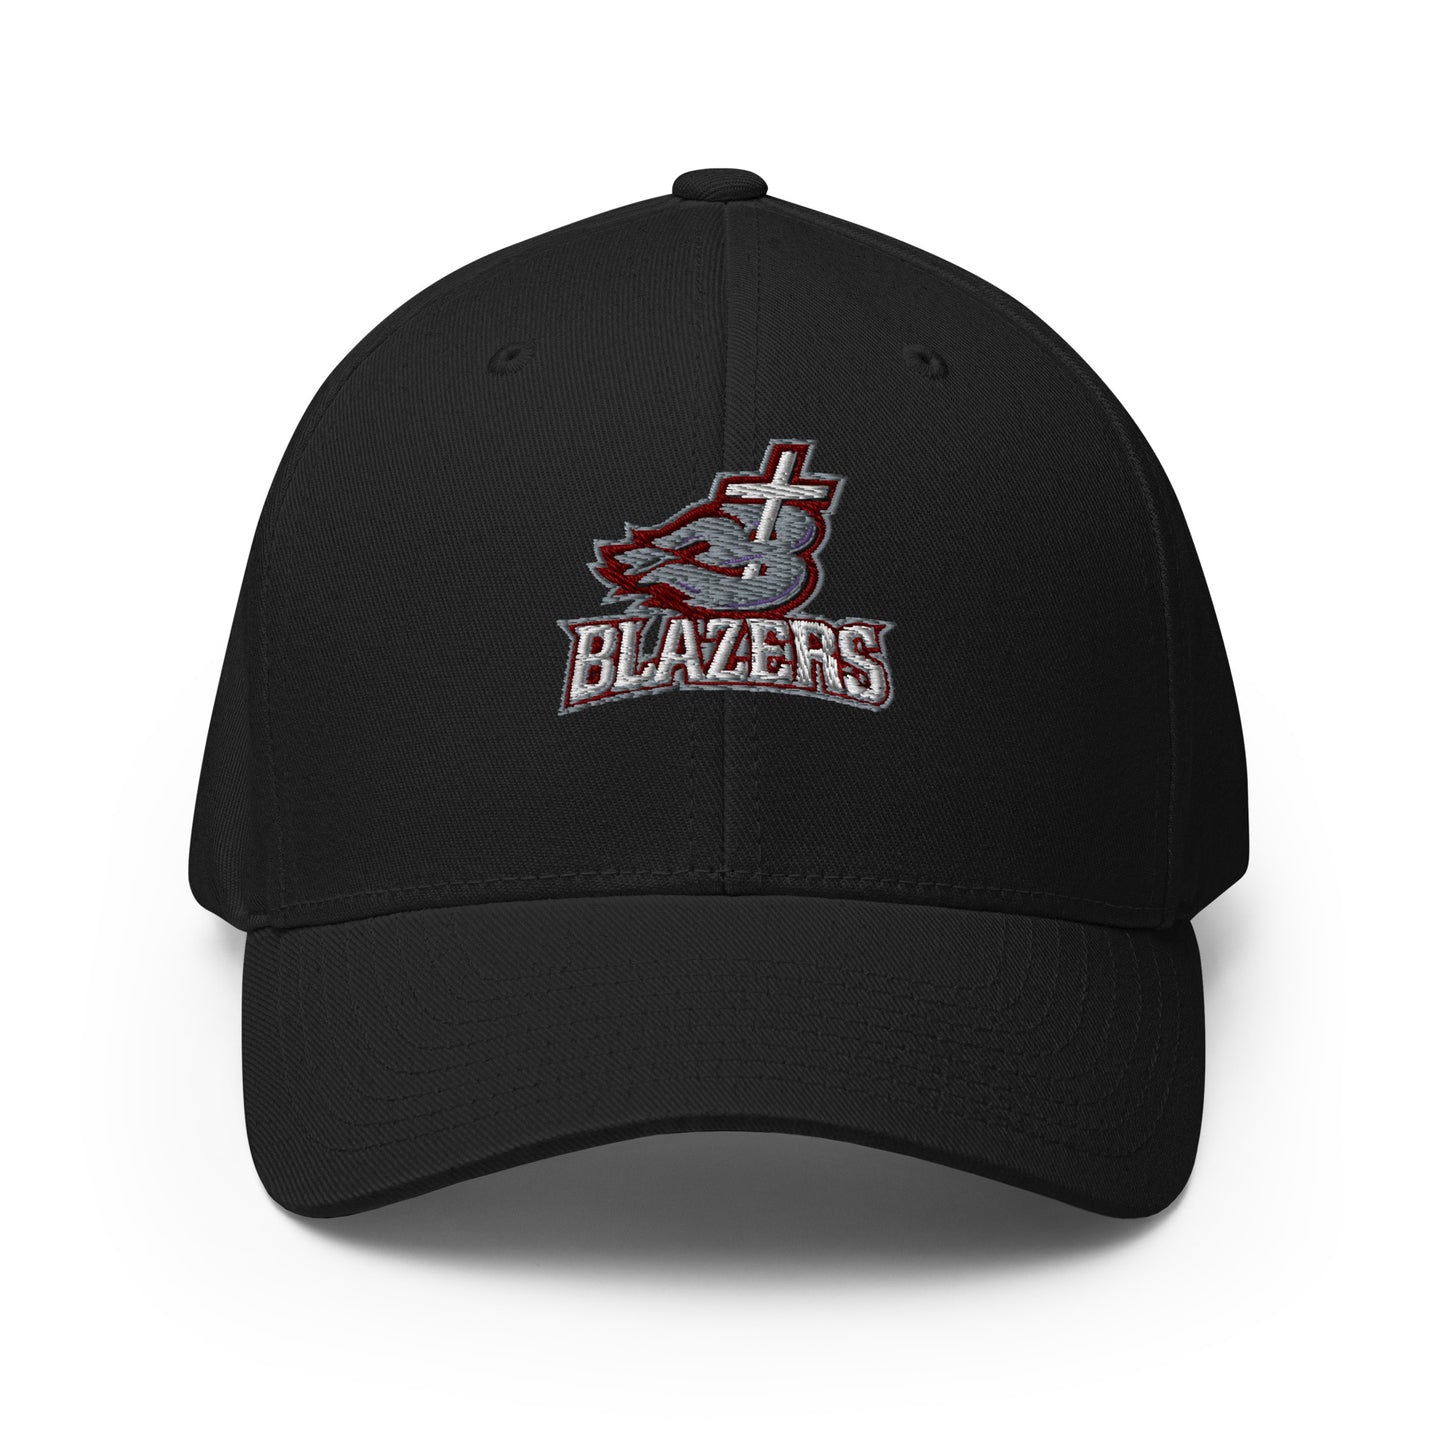 Blazers Flexfit Structured Twill Cap